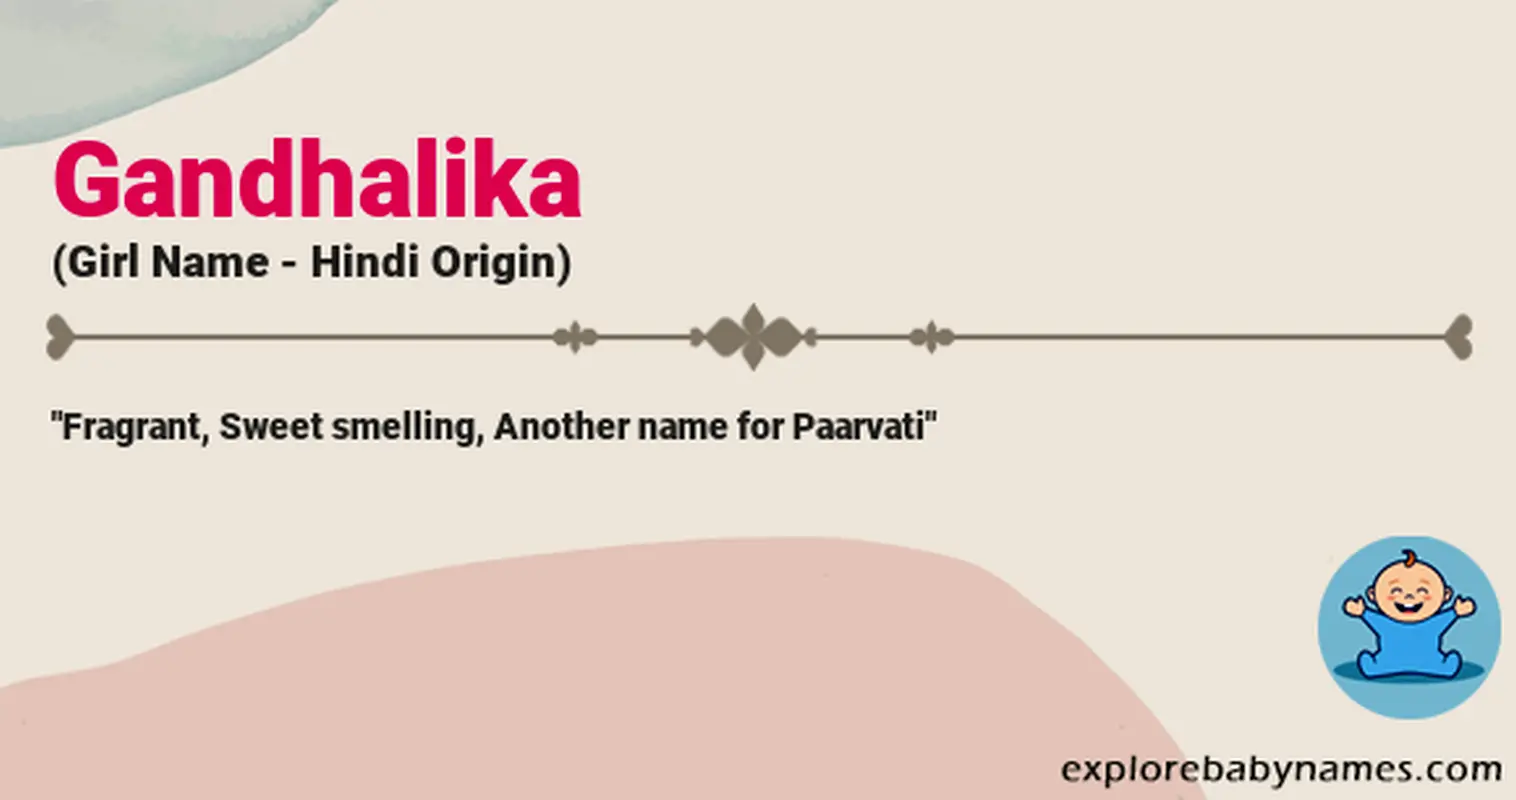 Meaning of Gandhalika